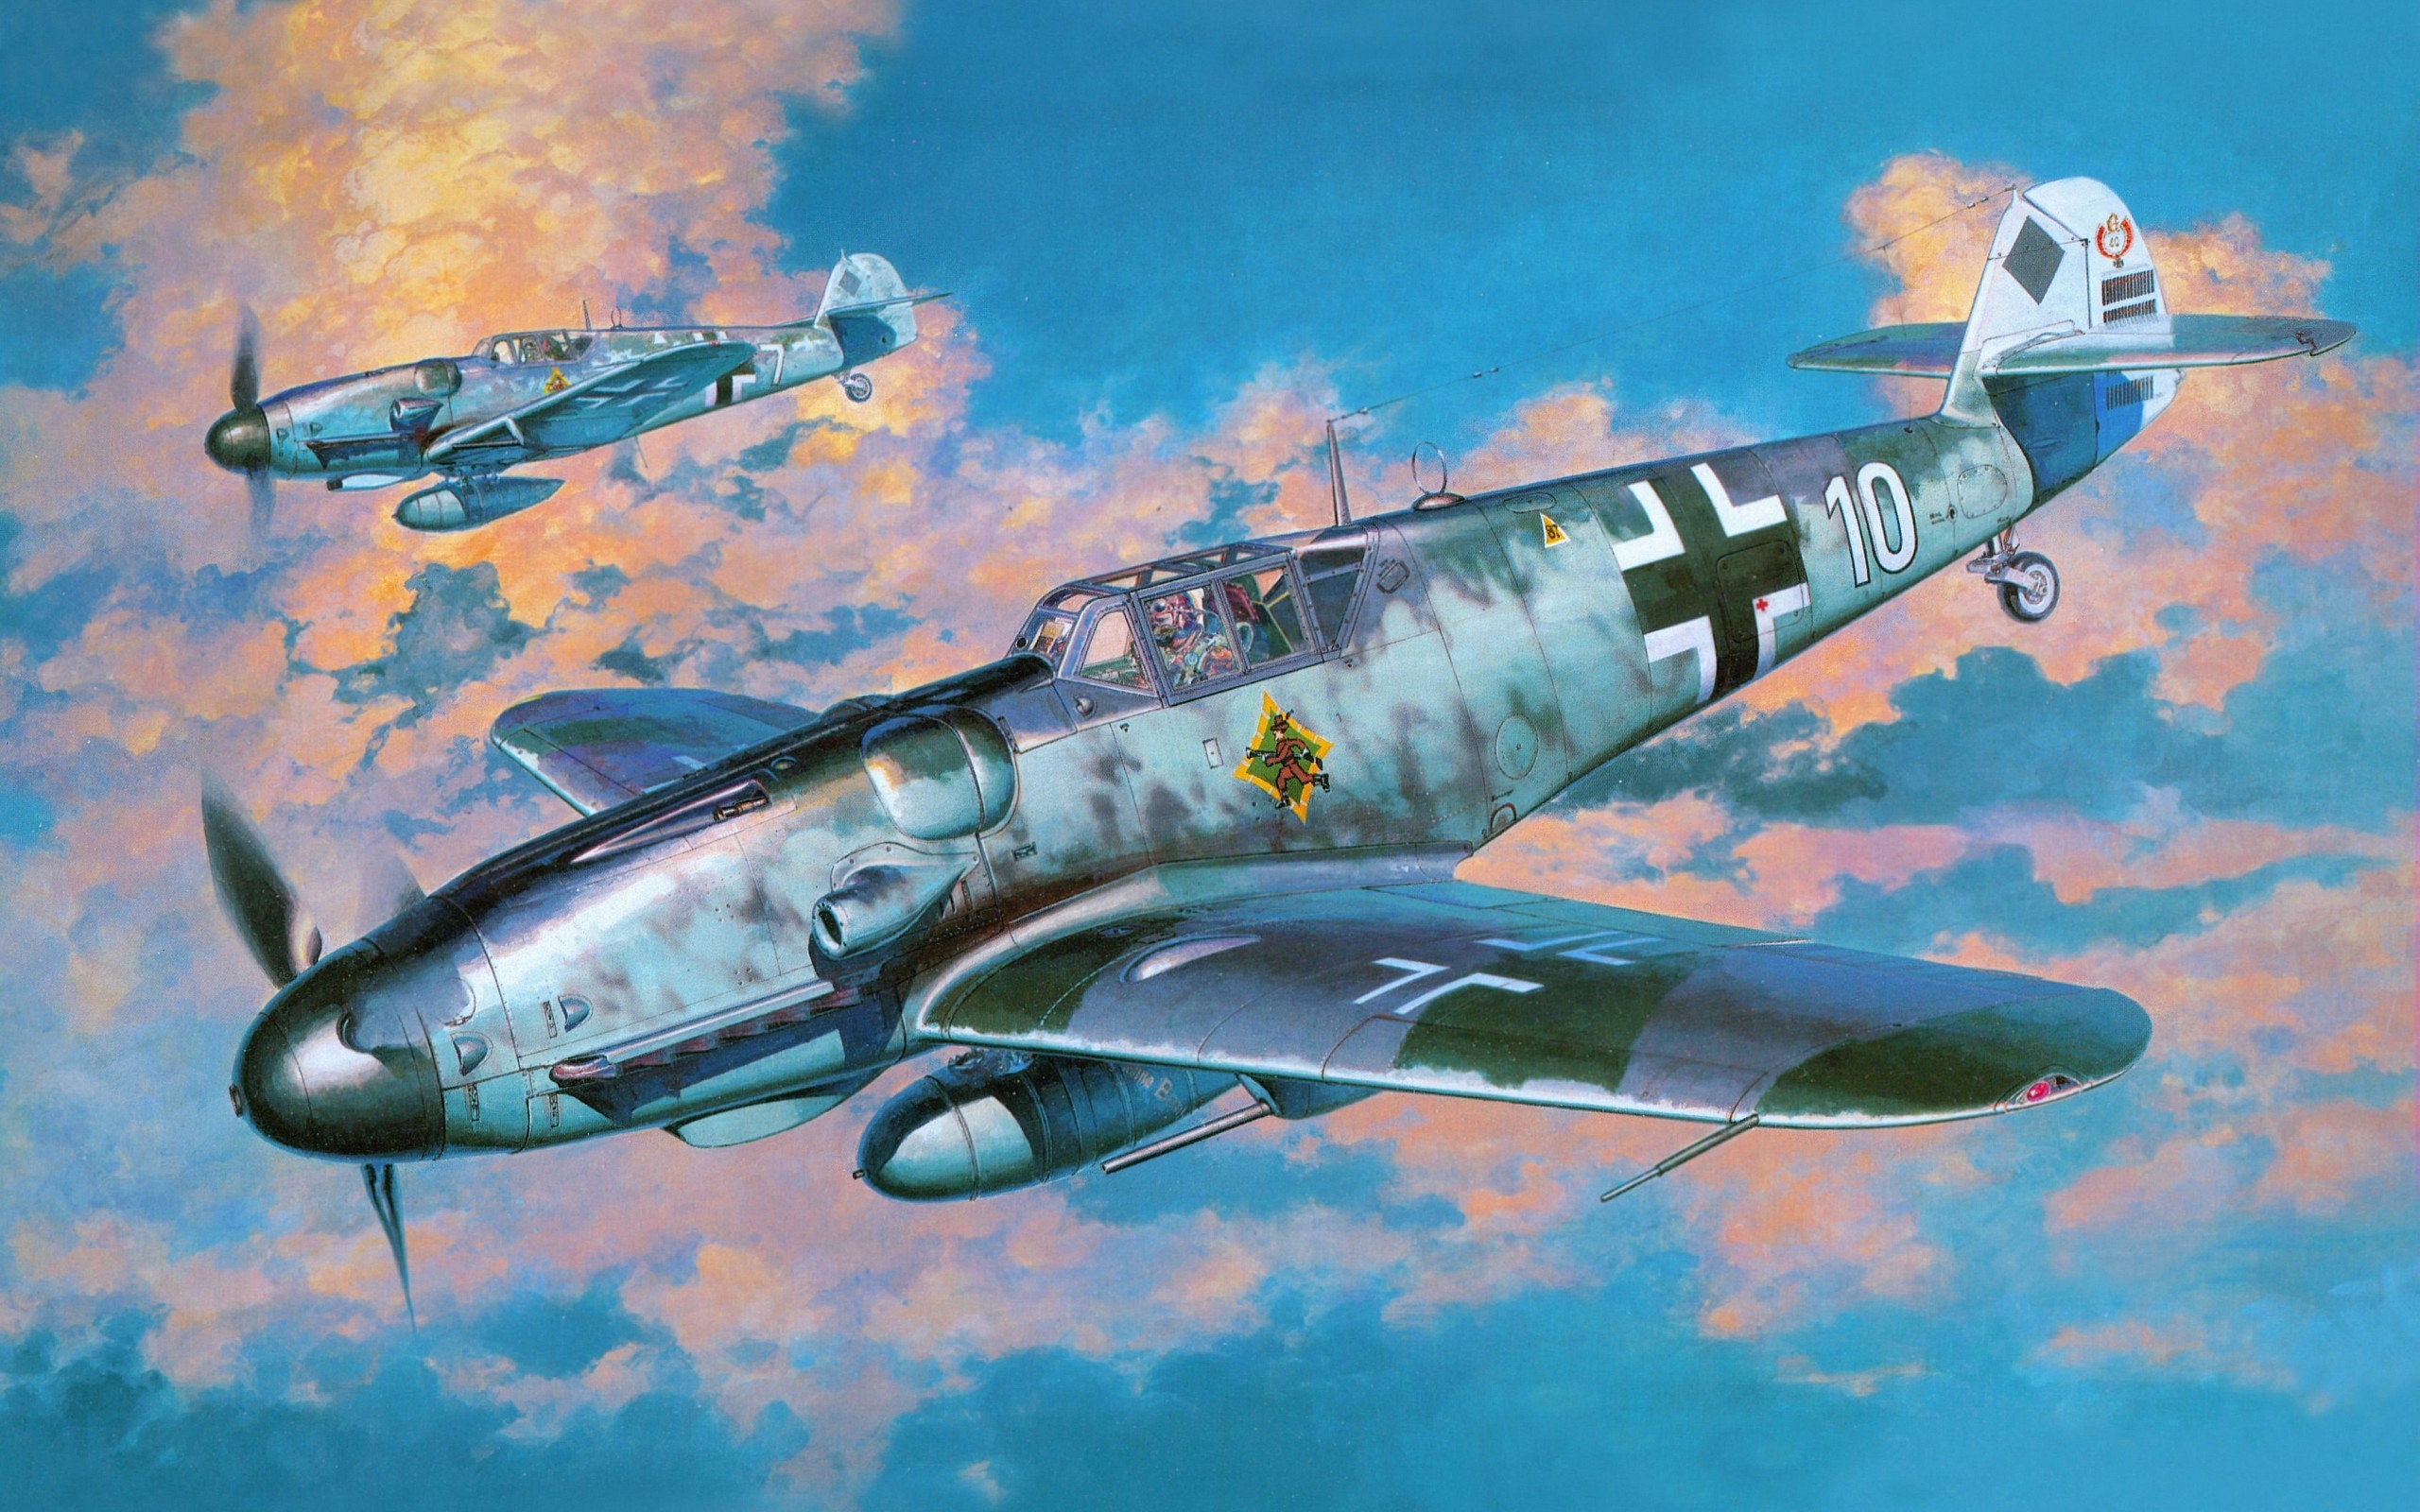 2560x1600 Messerschmitt, Messerschmitt Bf 109, Luftwaffe, Aircraft, Military,  Artwork, Military Aircraft, World War II, Germany Wallpapers HD / Desktop  and Mobile ...